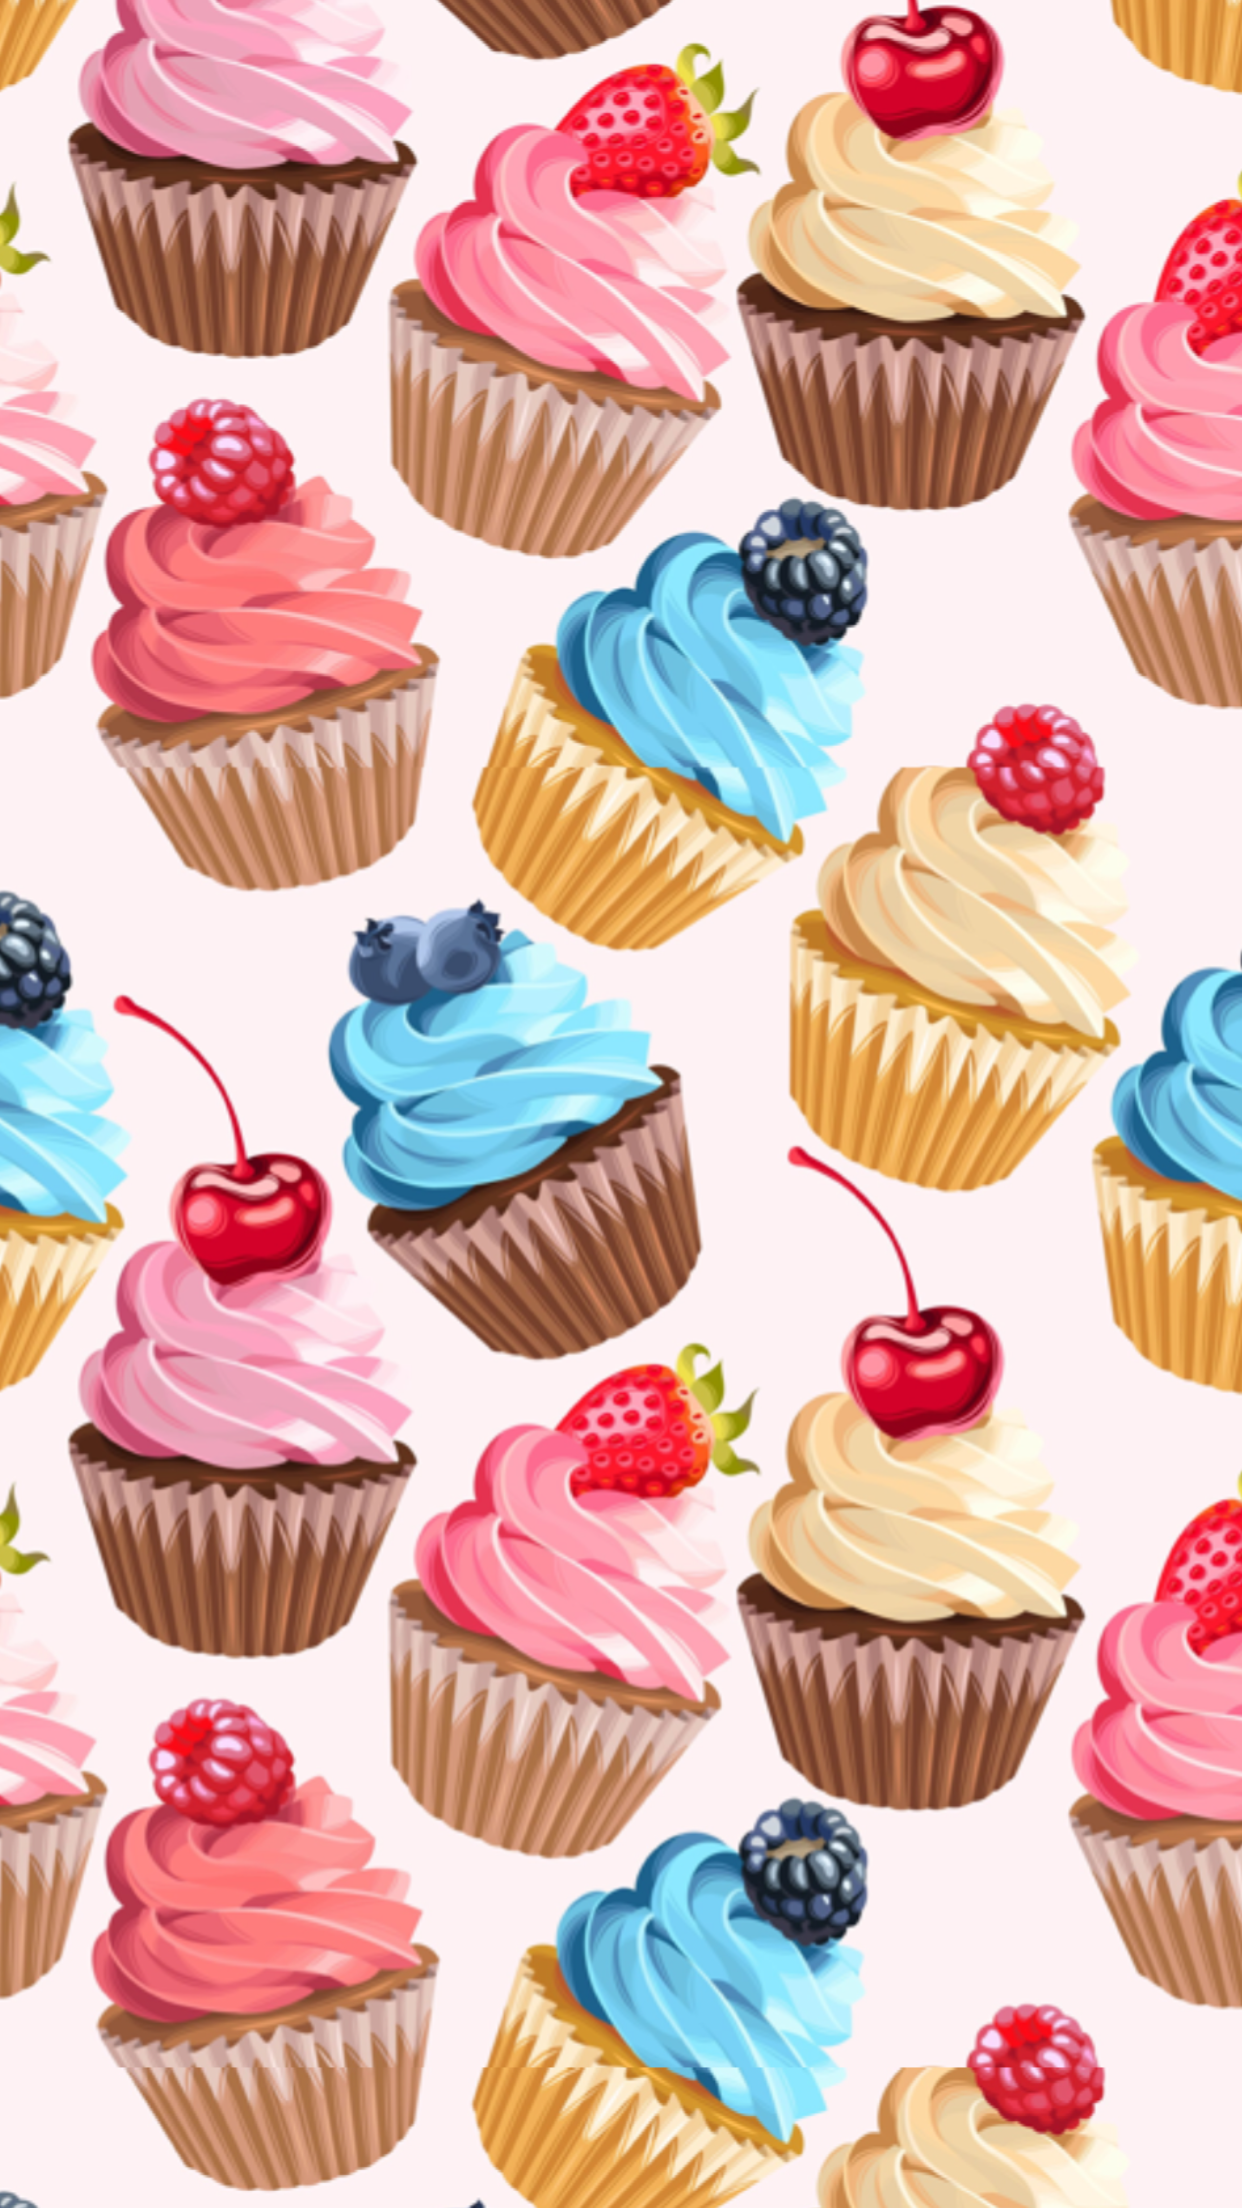 cupcakes wallpaper, cupcake art .com